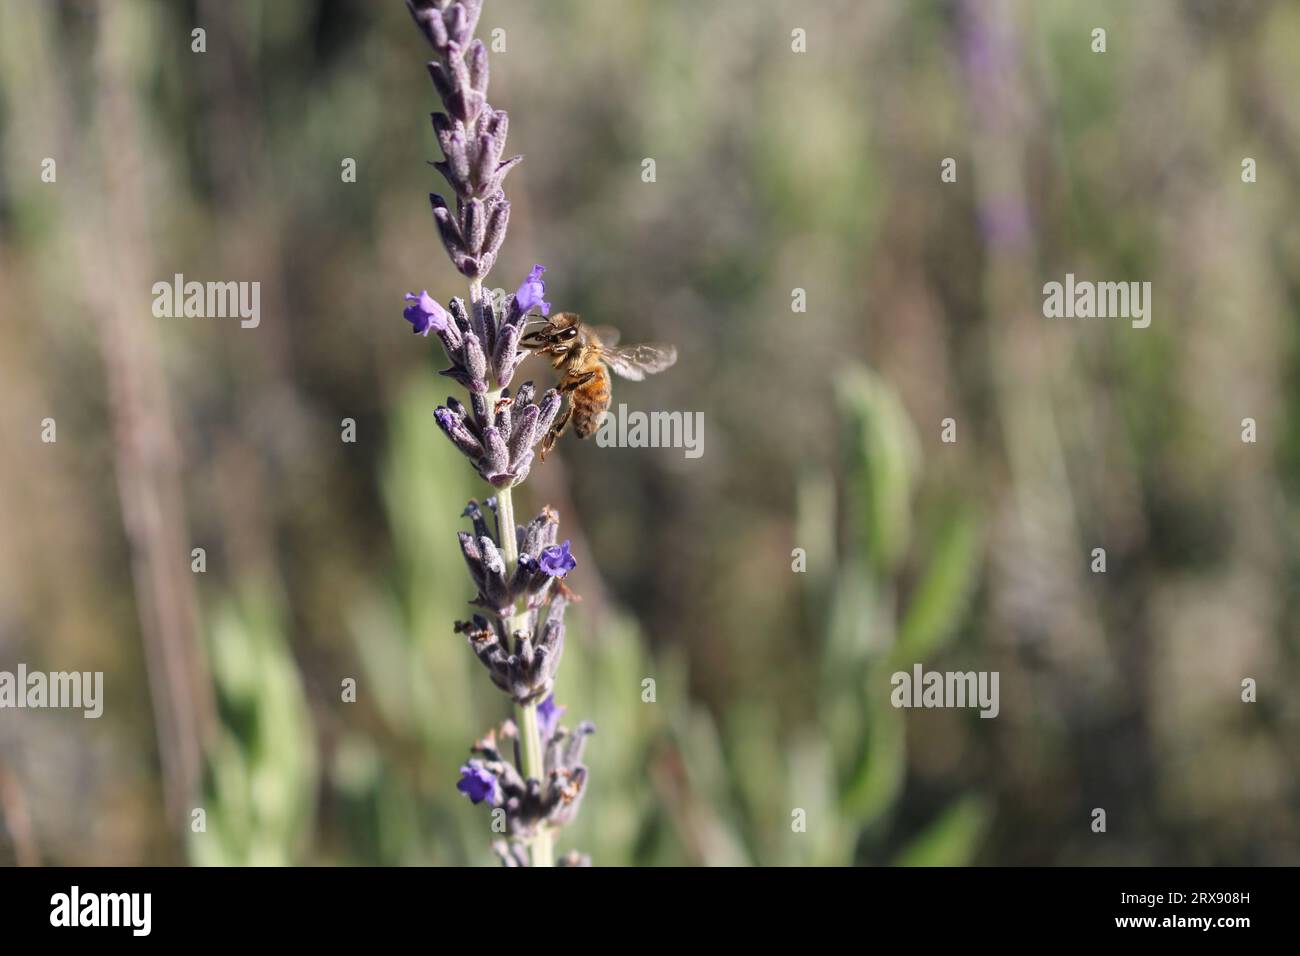 WESTERN Honey Bee (Apis mellifera) débarquant sur la fleur de lavande, Australie méridionale Banque D'Images